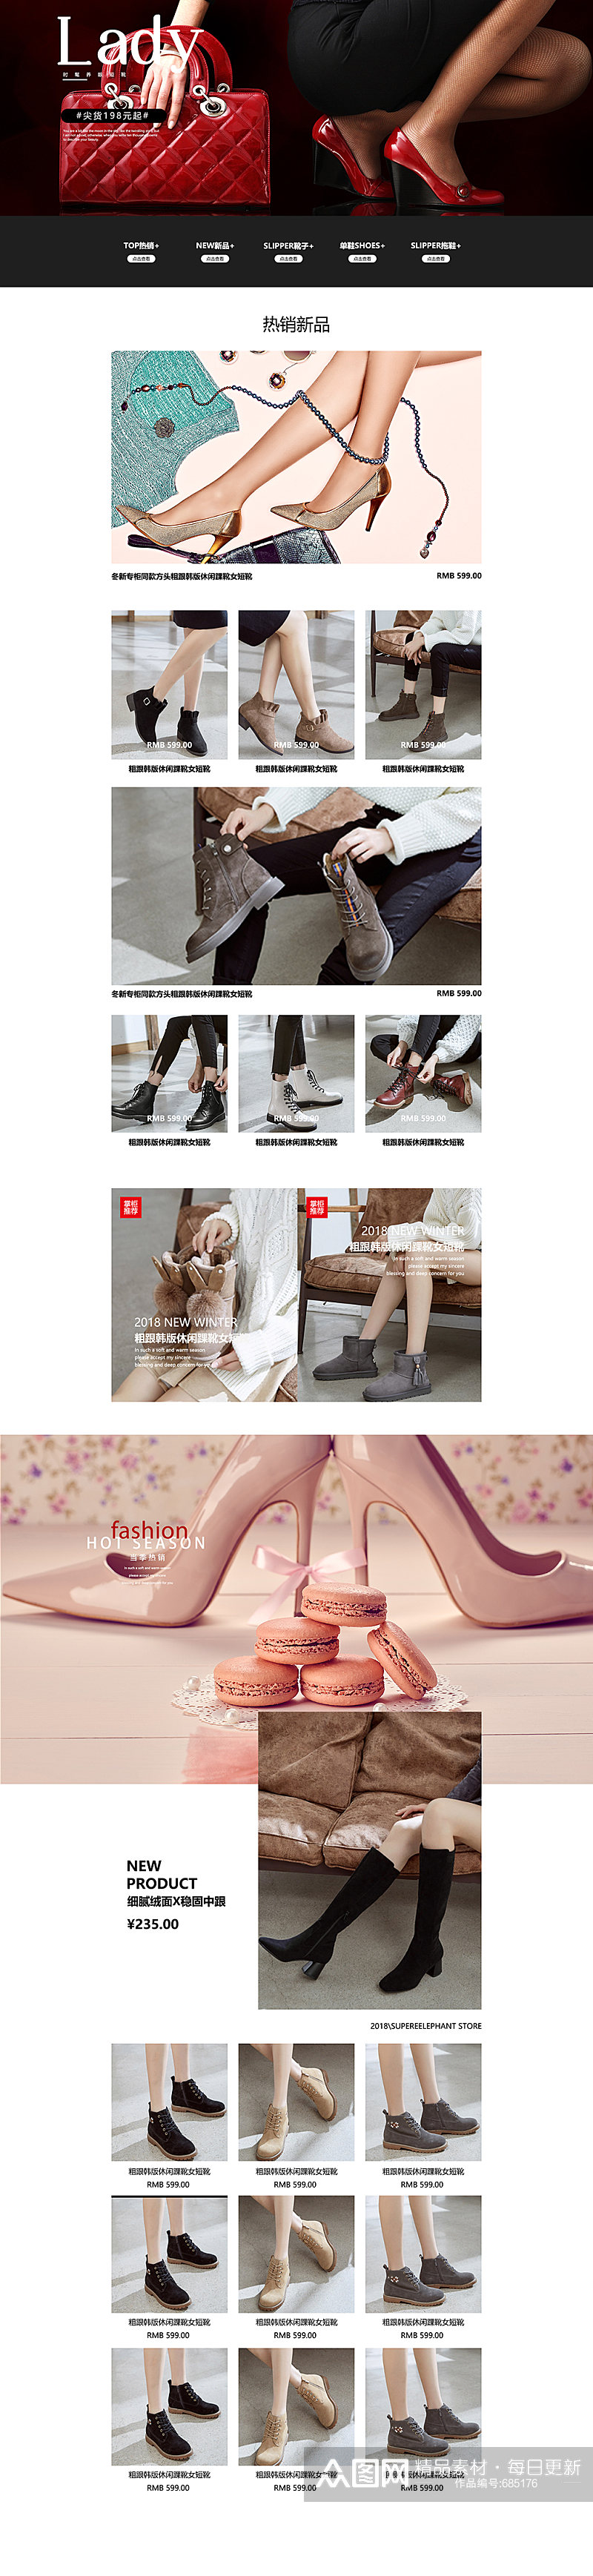 淘宝女鞋促销活动首页设计素材